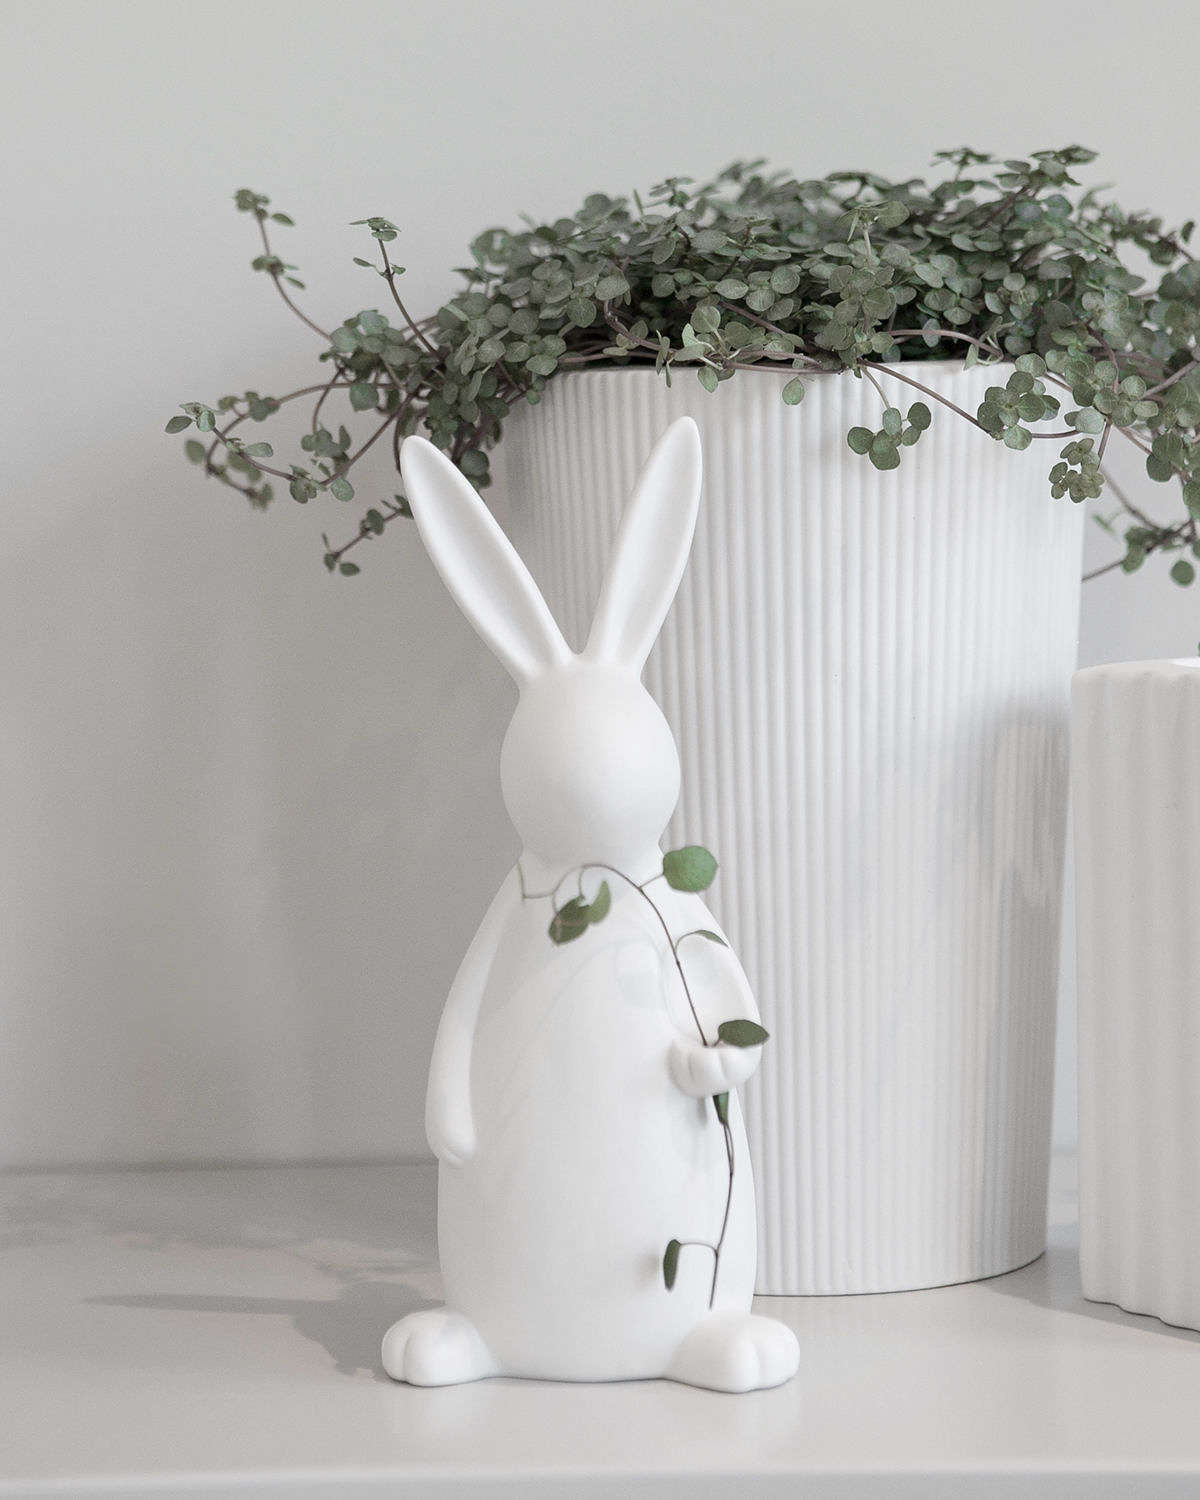 Large white ceramic Easter rabbit